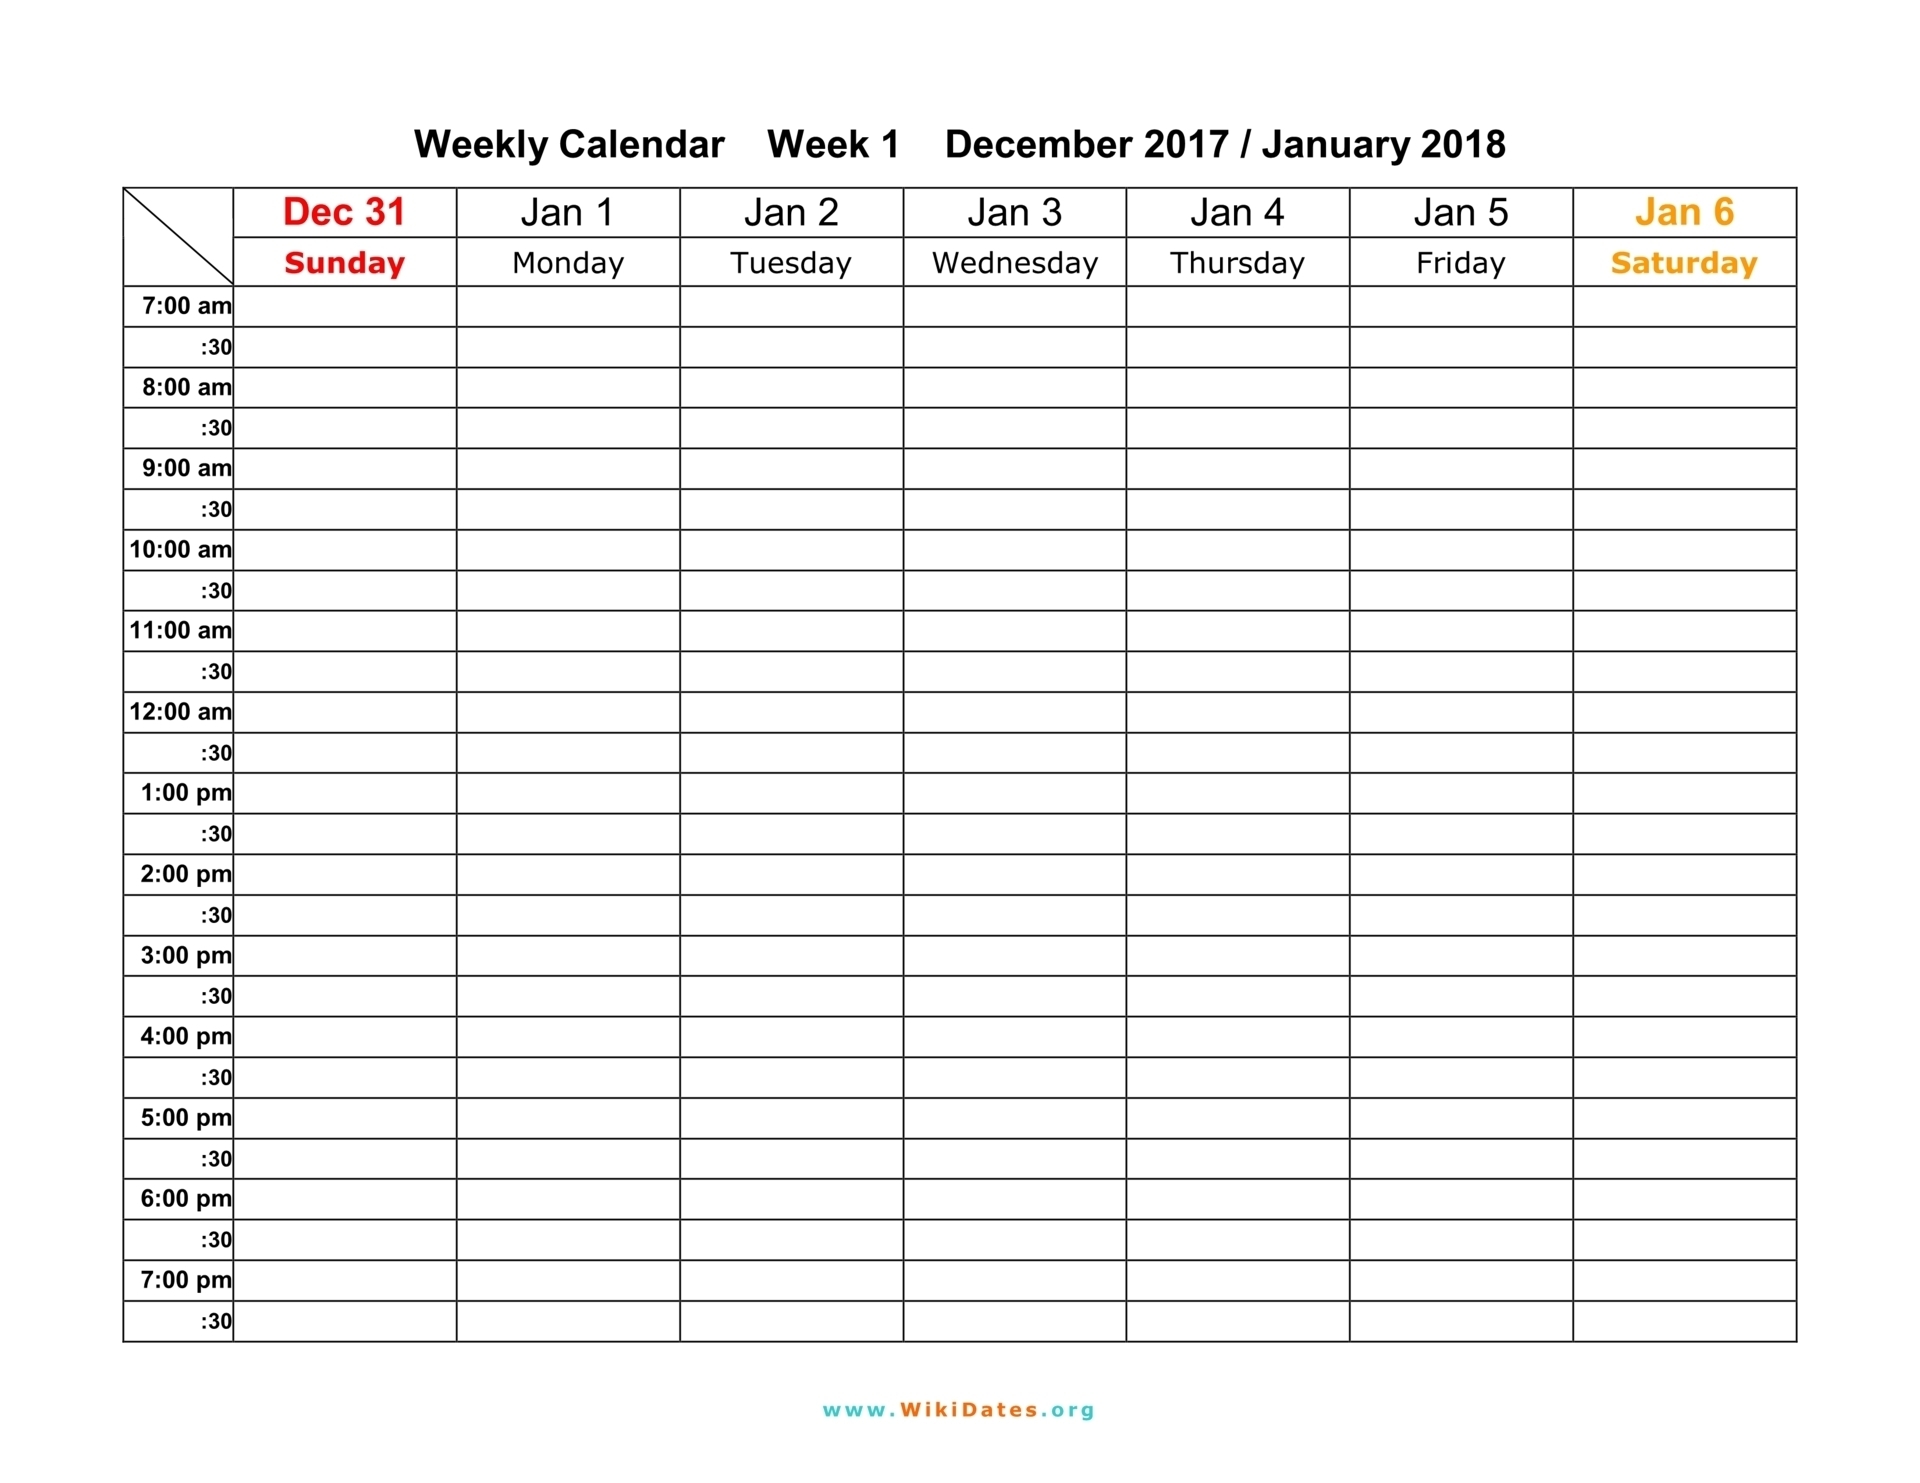 Weekly Calendar - Download Weekly Calendar 2017 And 2018